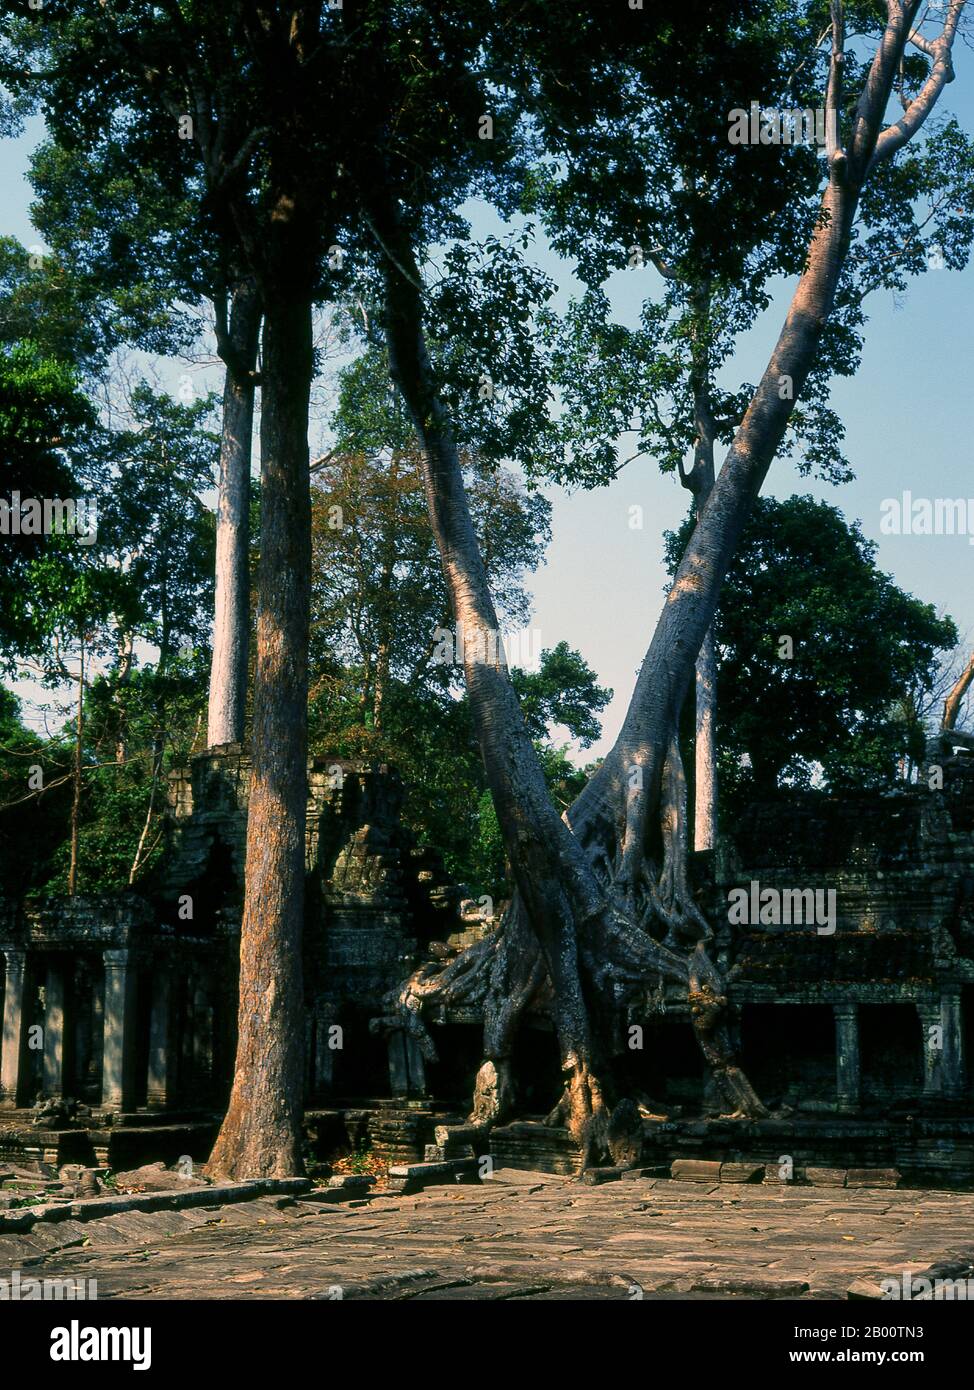 Cambodge: Parvis d'entrée de l'est, Preah Khan, Angkor. Preah Khan (temple de l'épée sacrée) a été construit à la fin du XIIe siècle (1191) par Jayavarman VII et est situé juste au nord d'Angkor Thom. Le temple a été construit sur le site de la victoire de Jayavarman VII sur les Chams envahisseurs en 1191. Elle était le centre d'une organisation importante, avec près de 100,000 fonctionnaires et fonctionnaires. Il a servi comme une université bouddhiste à un moment donné. La déité primaire du temple est la boddhisatva Avalokiteshvara sous la forme du père de Jayavarman. Banque D'Images